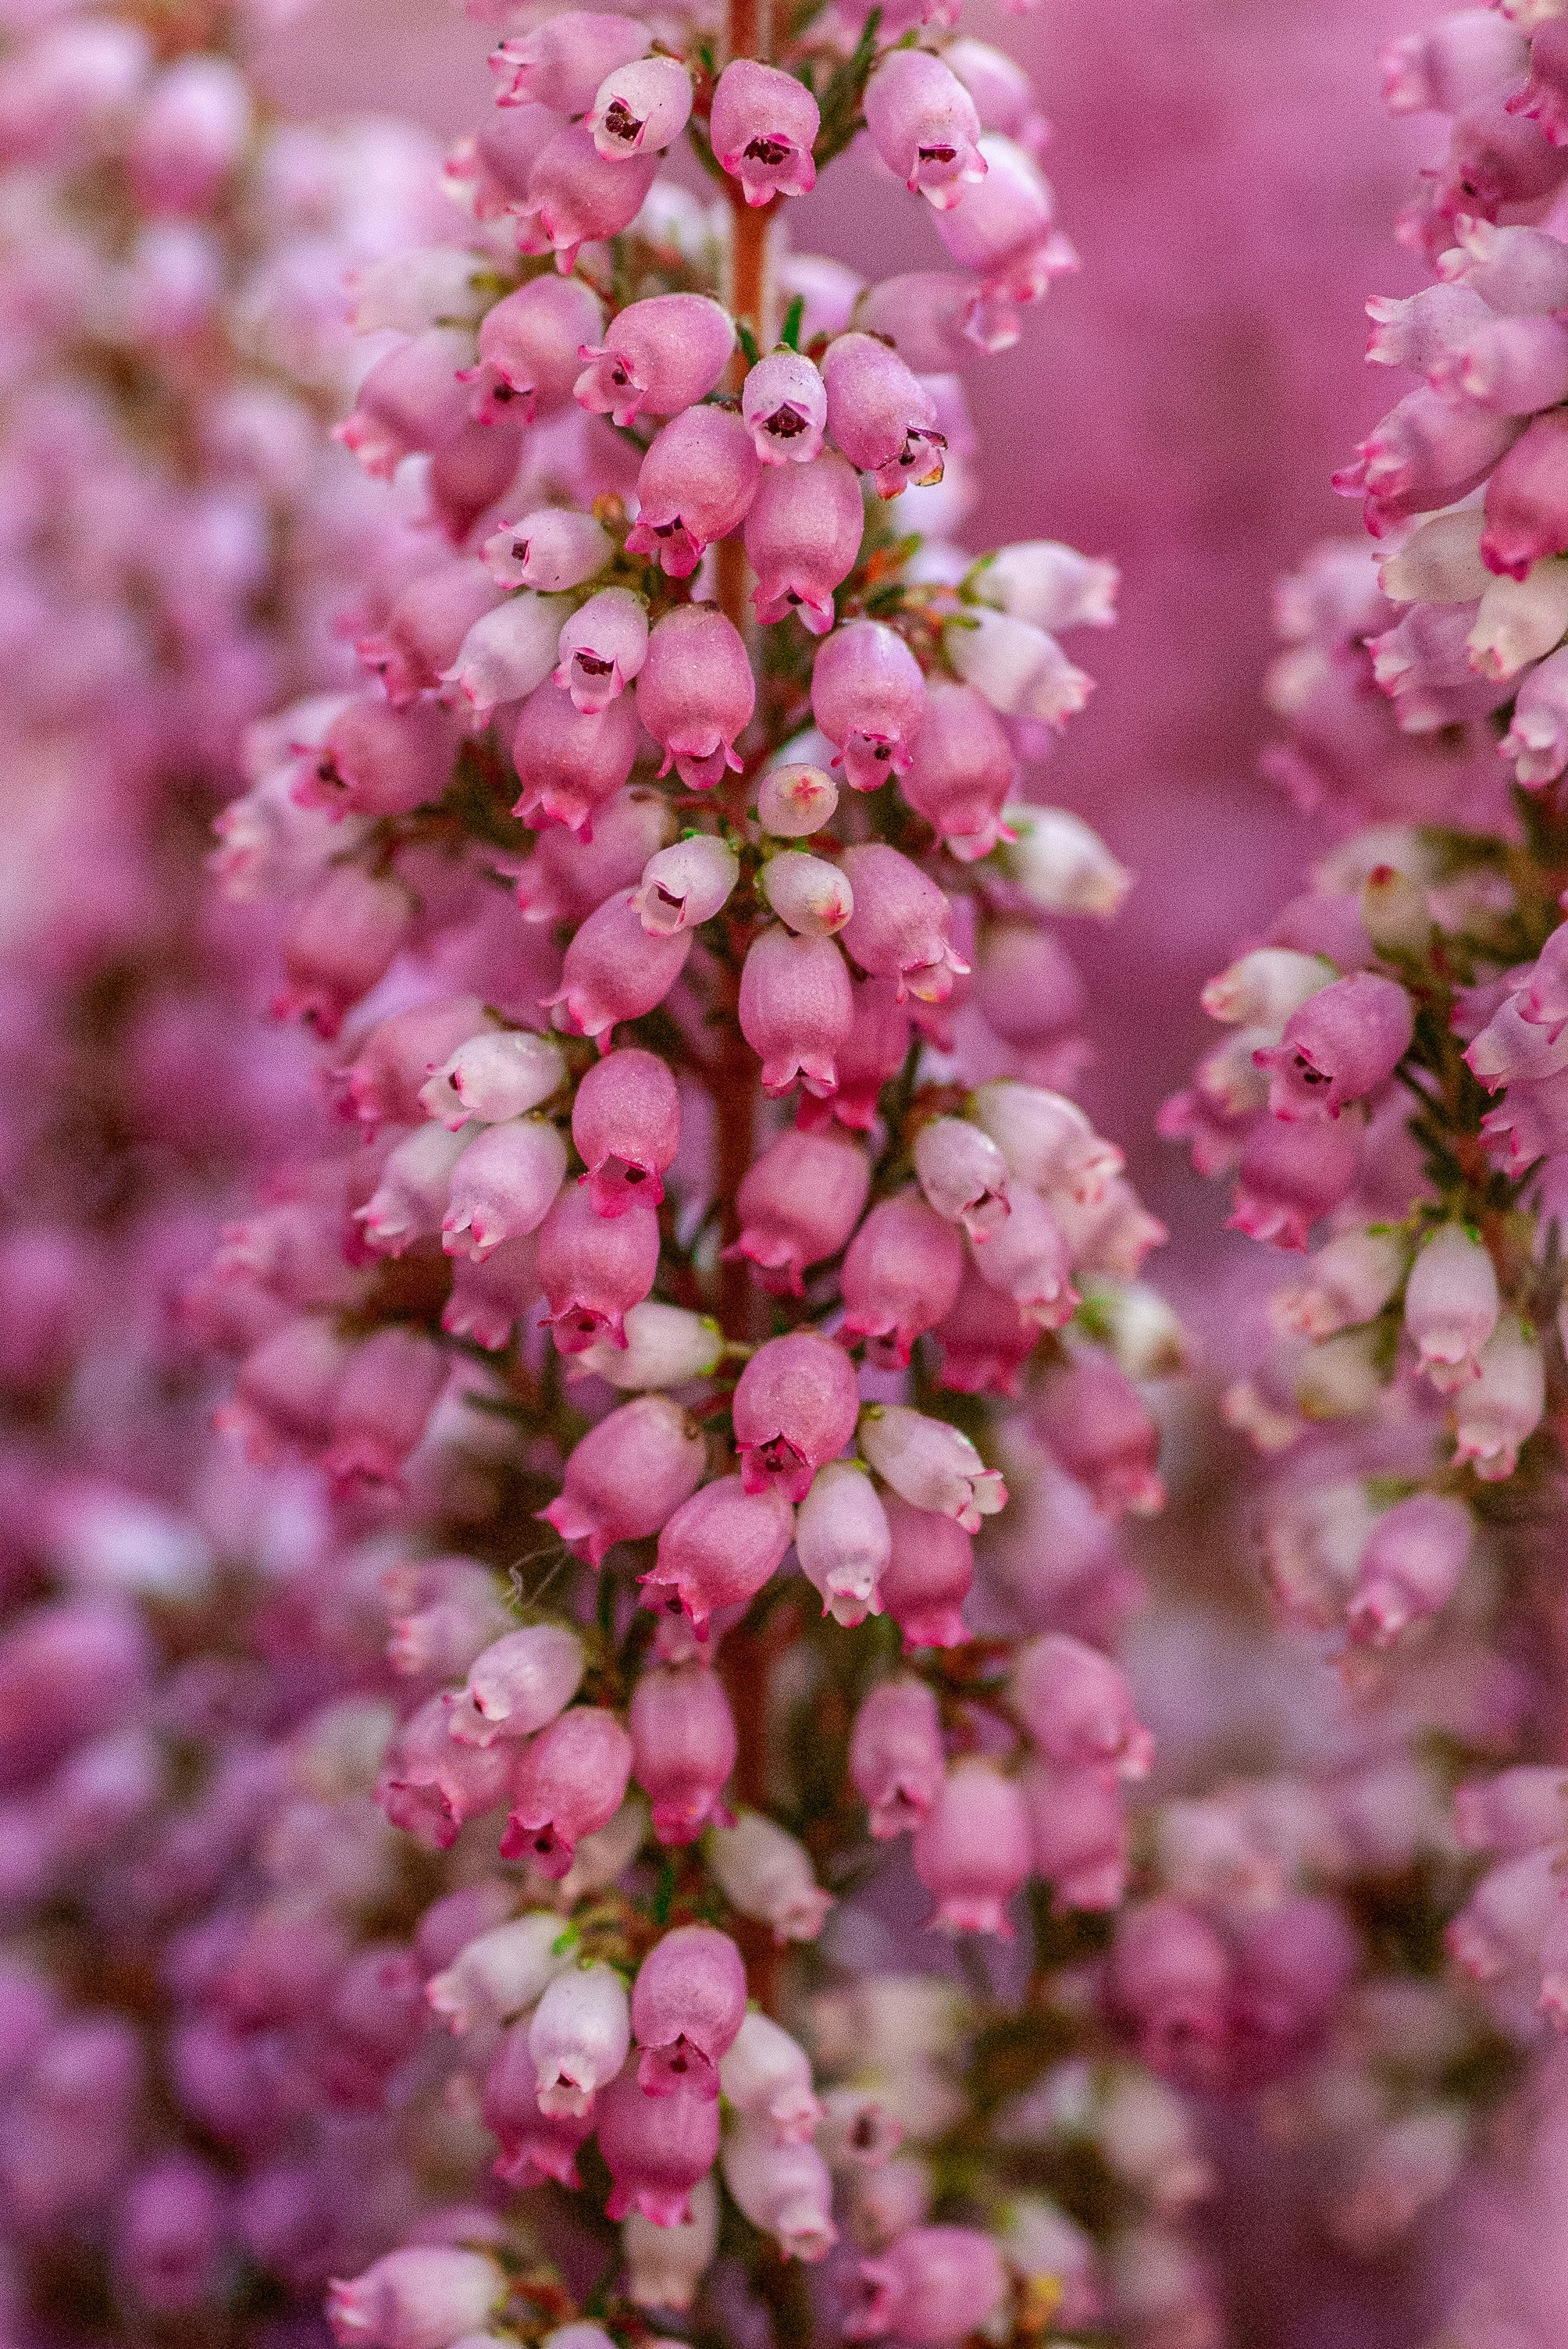 pink-petaled flowers